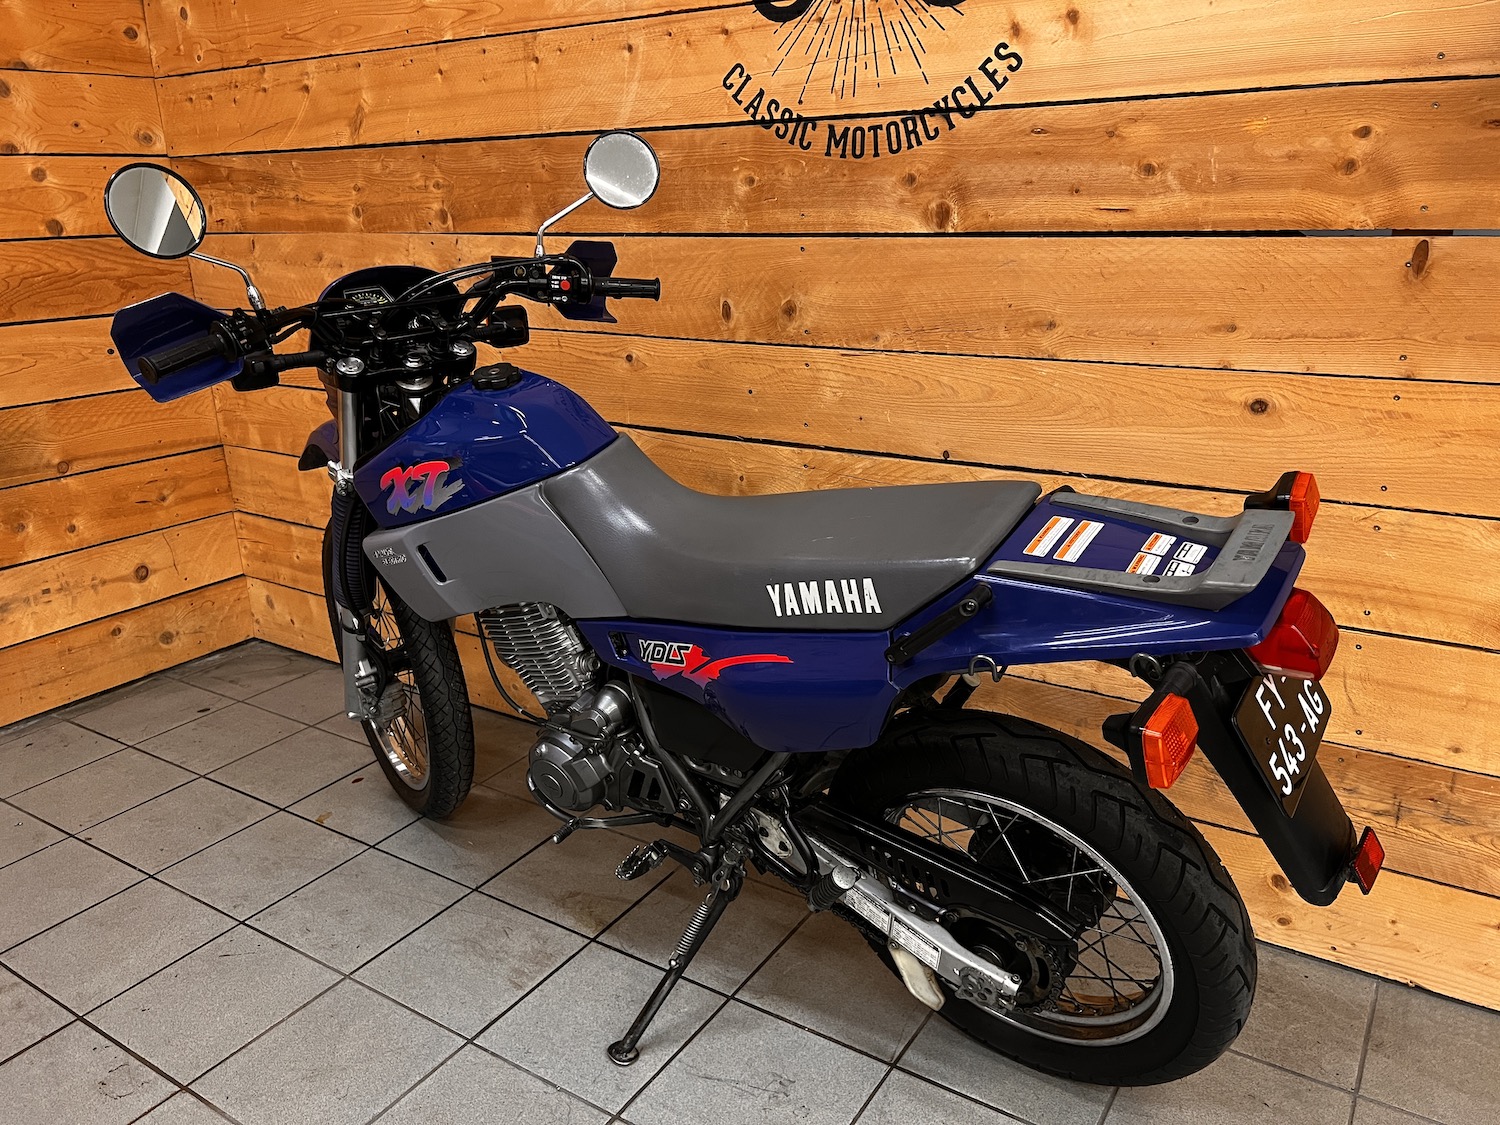 Yamaha_xt600e_Cezanne_classic_motorcycle-154.jpg